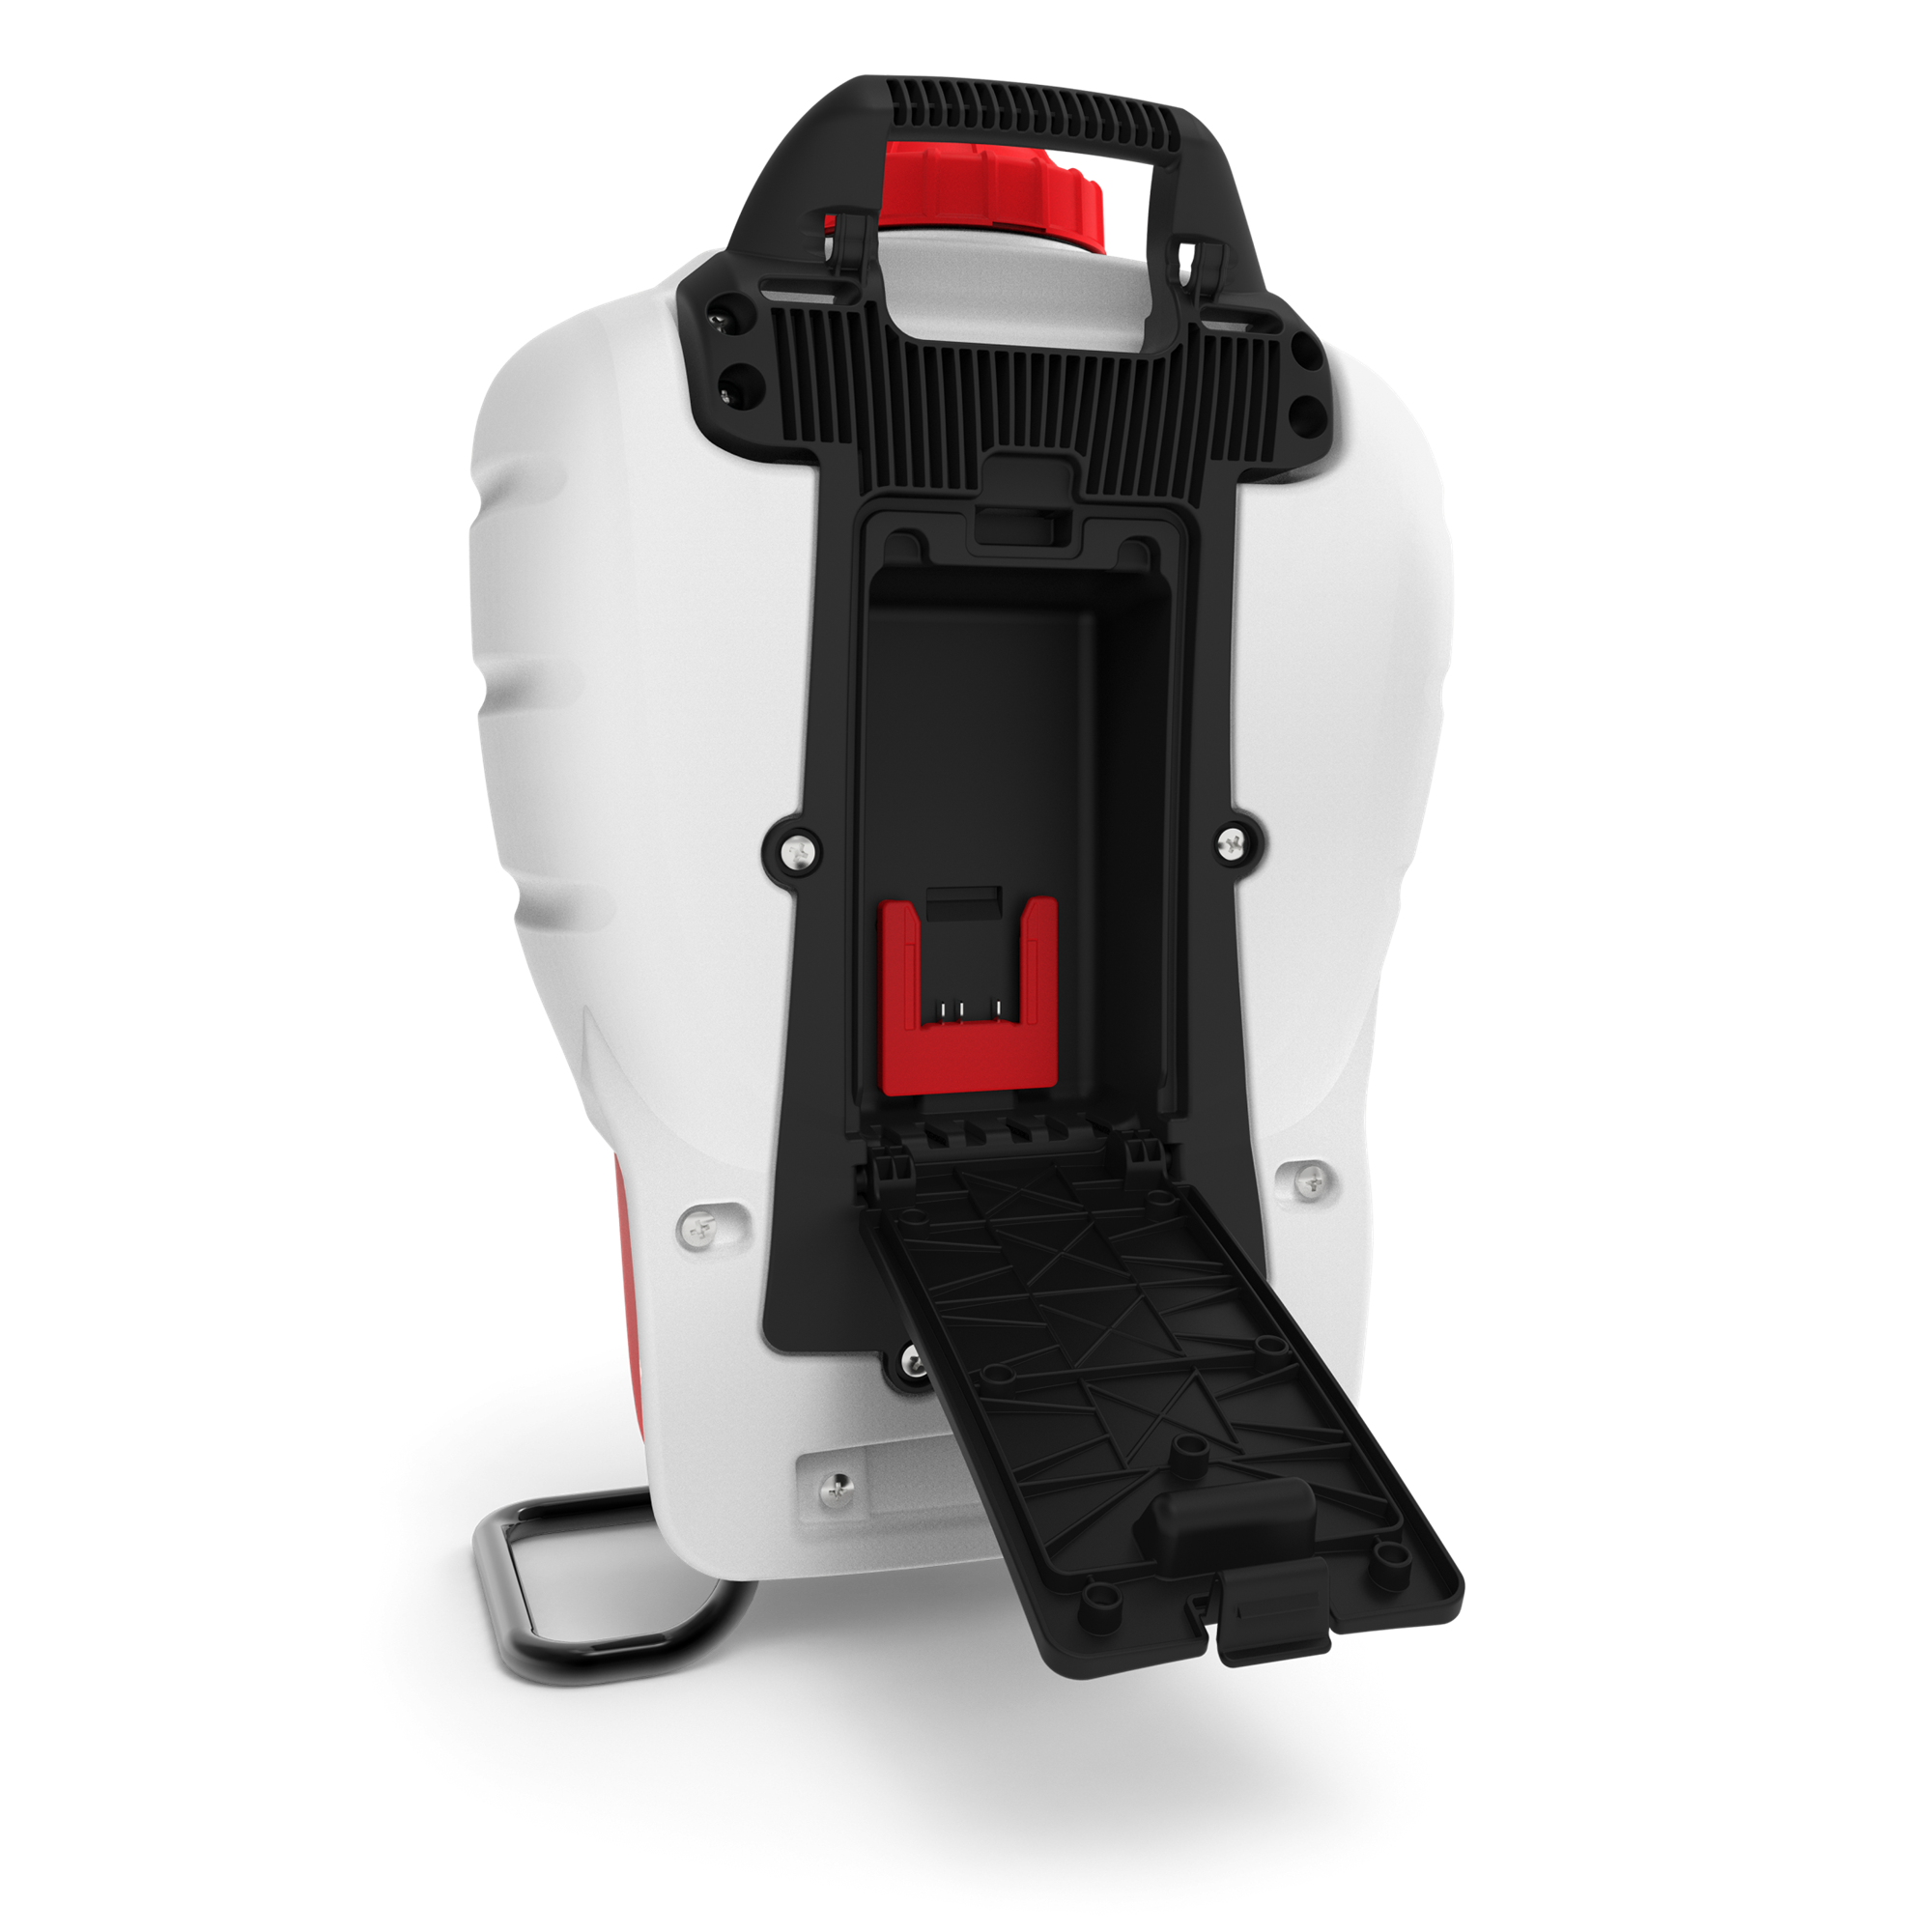 RedMax 4 Gallon Battery-Powered Backpack Sprayer – Gardenland Power